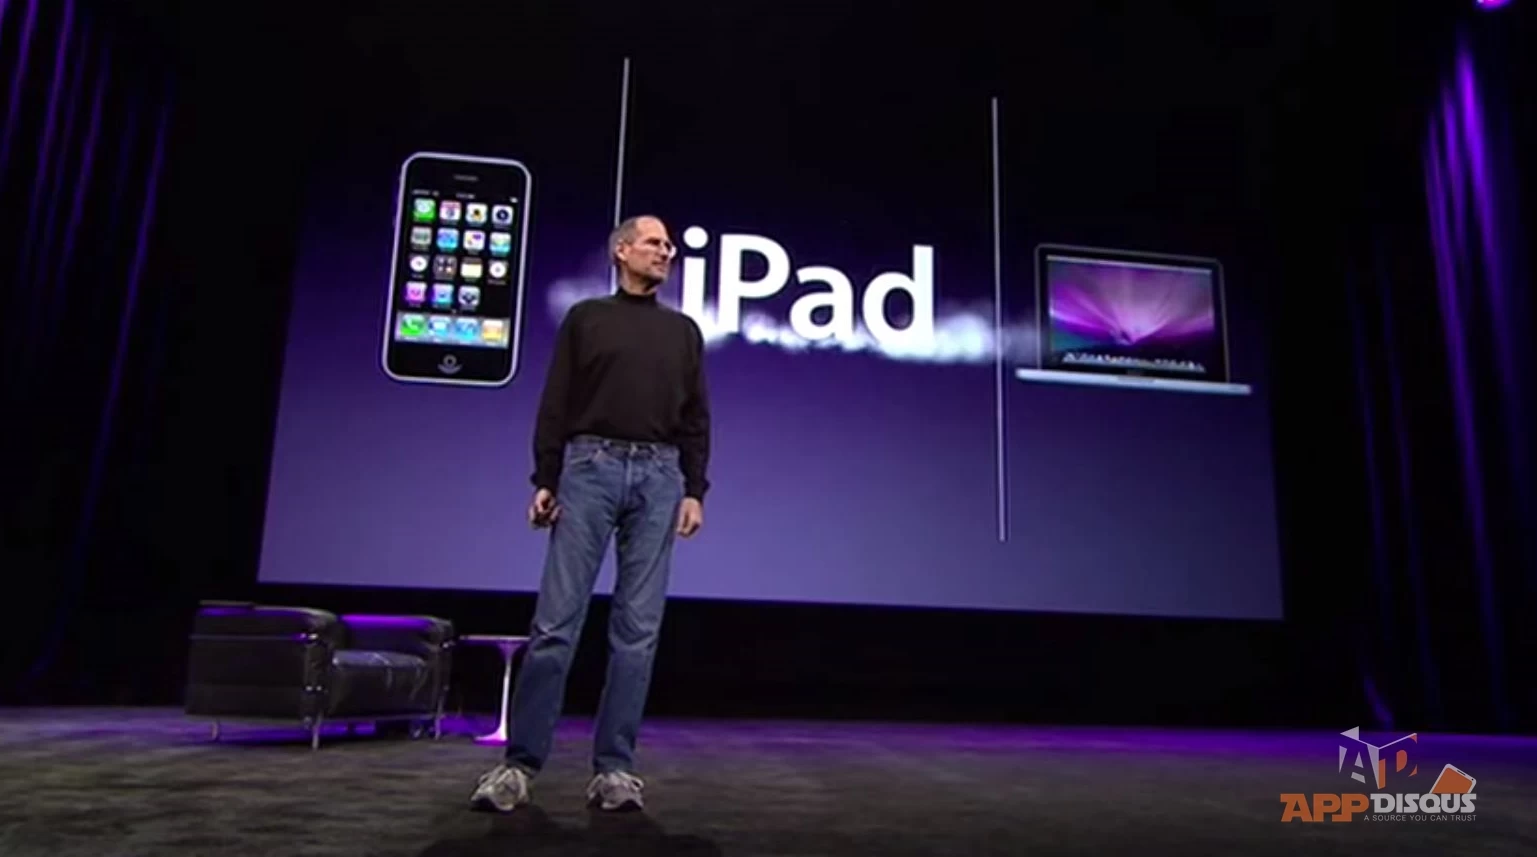 10947378 10204636124596630 7462459316999356524 o | Steve Jobs | คลิปวีดีโอ: การเปิดตัว iPad ครั้งแรก รำลึก Steve Jobs กับครบรอบ 5 ปี ของ iPad